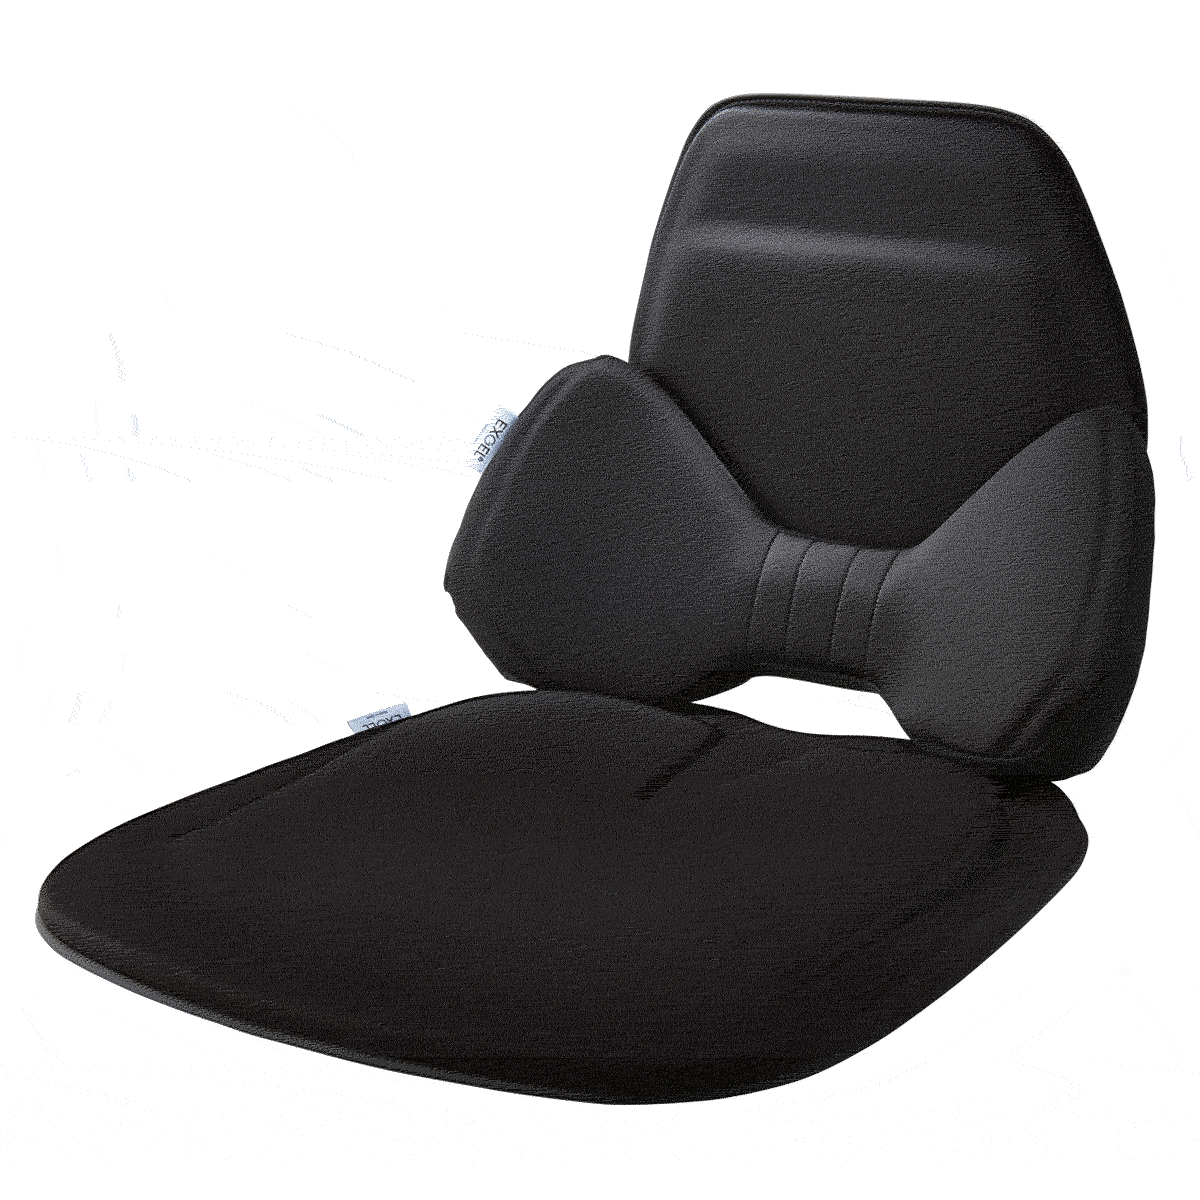 ジェルクッション 腰痛 クッション 車 腰痛対策 腰痛防止 座布団 日本製 体圧分散 高品質 ドライブ ギフト ランバーサポート エクスジェル  EXGEL ハグドライブ